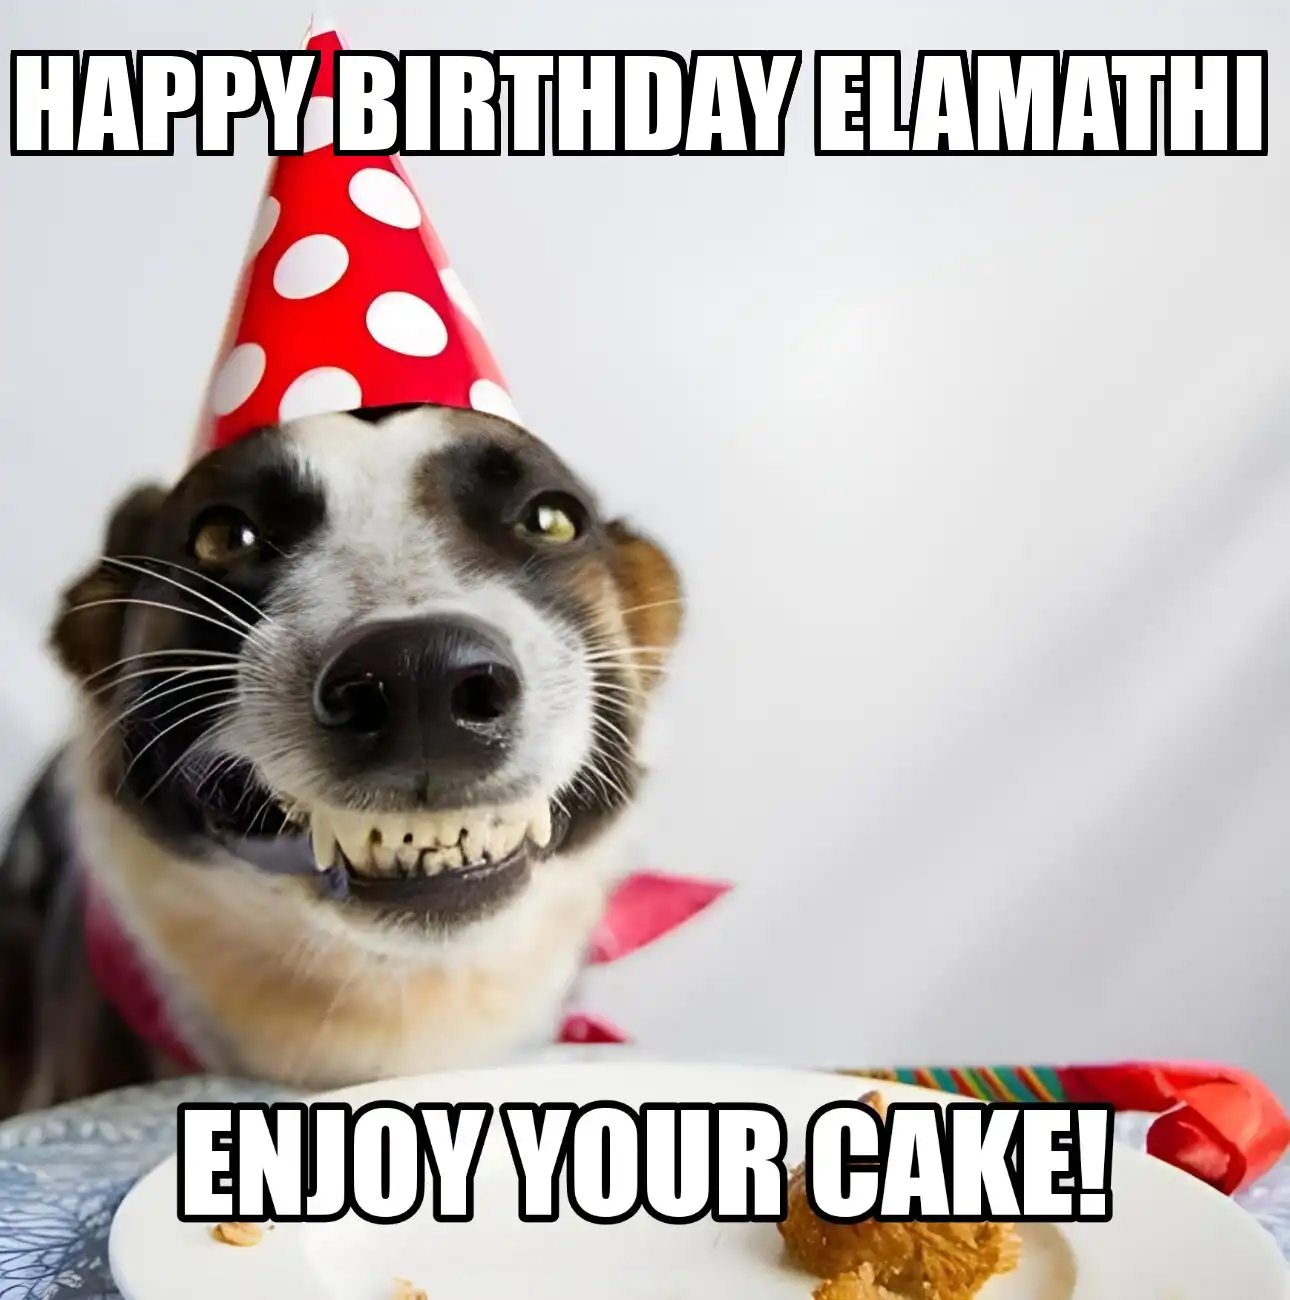 Happy Birthday Elamathi Enjoy Your Cake Dog Meme